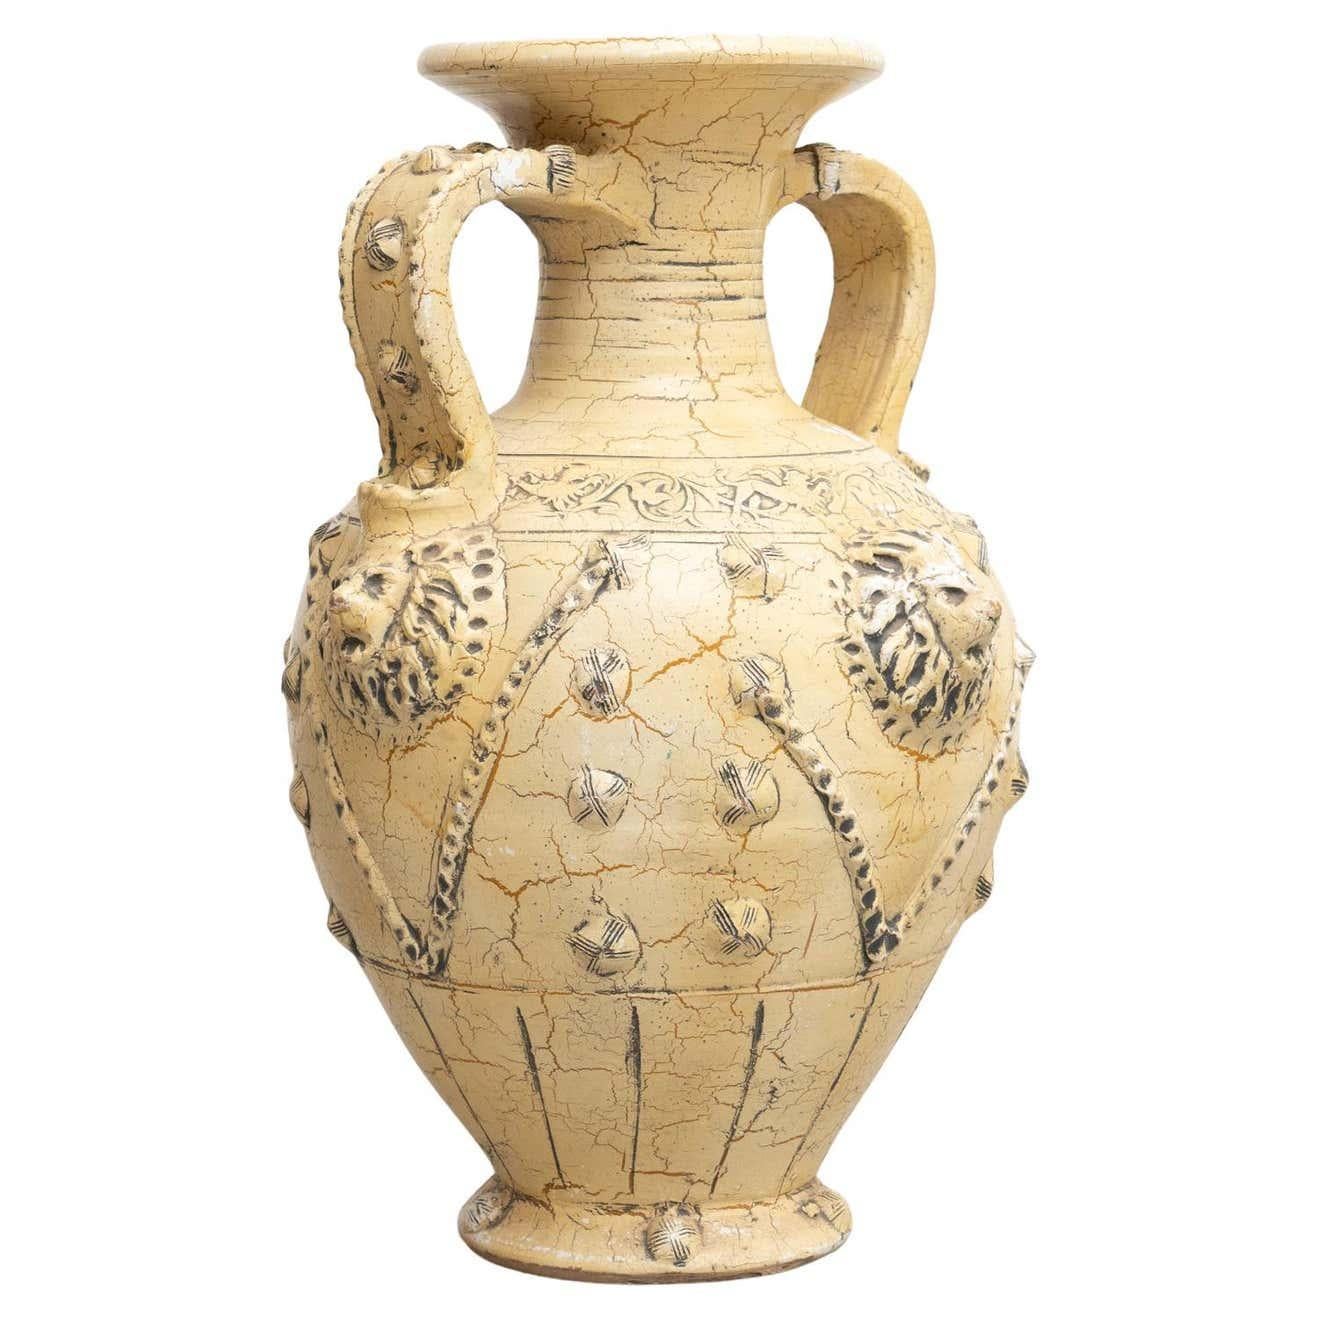 Vase rustique traditionnel en céramique.

Fabriqué en France, vers 1940.

En état d'origine, avec une usure mineure conforme à l'âge et à l'utilisation, préservant une belle patine.